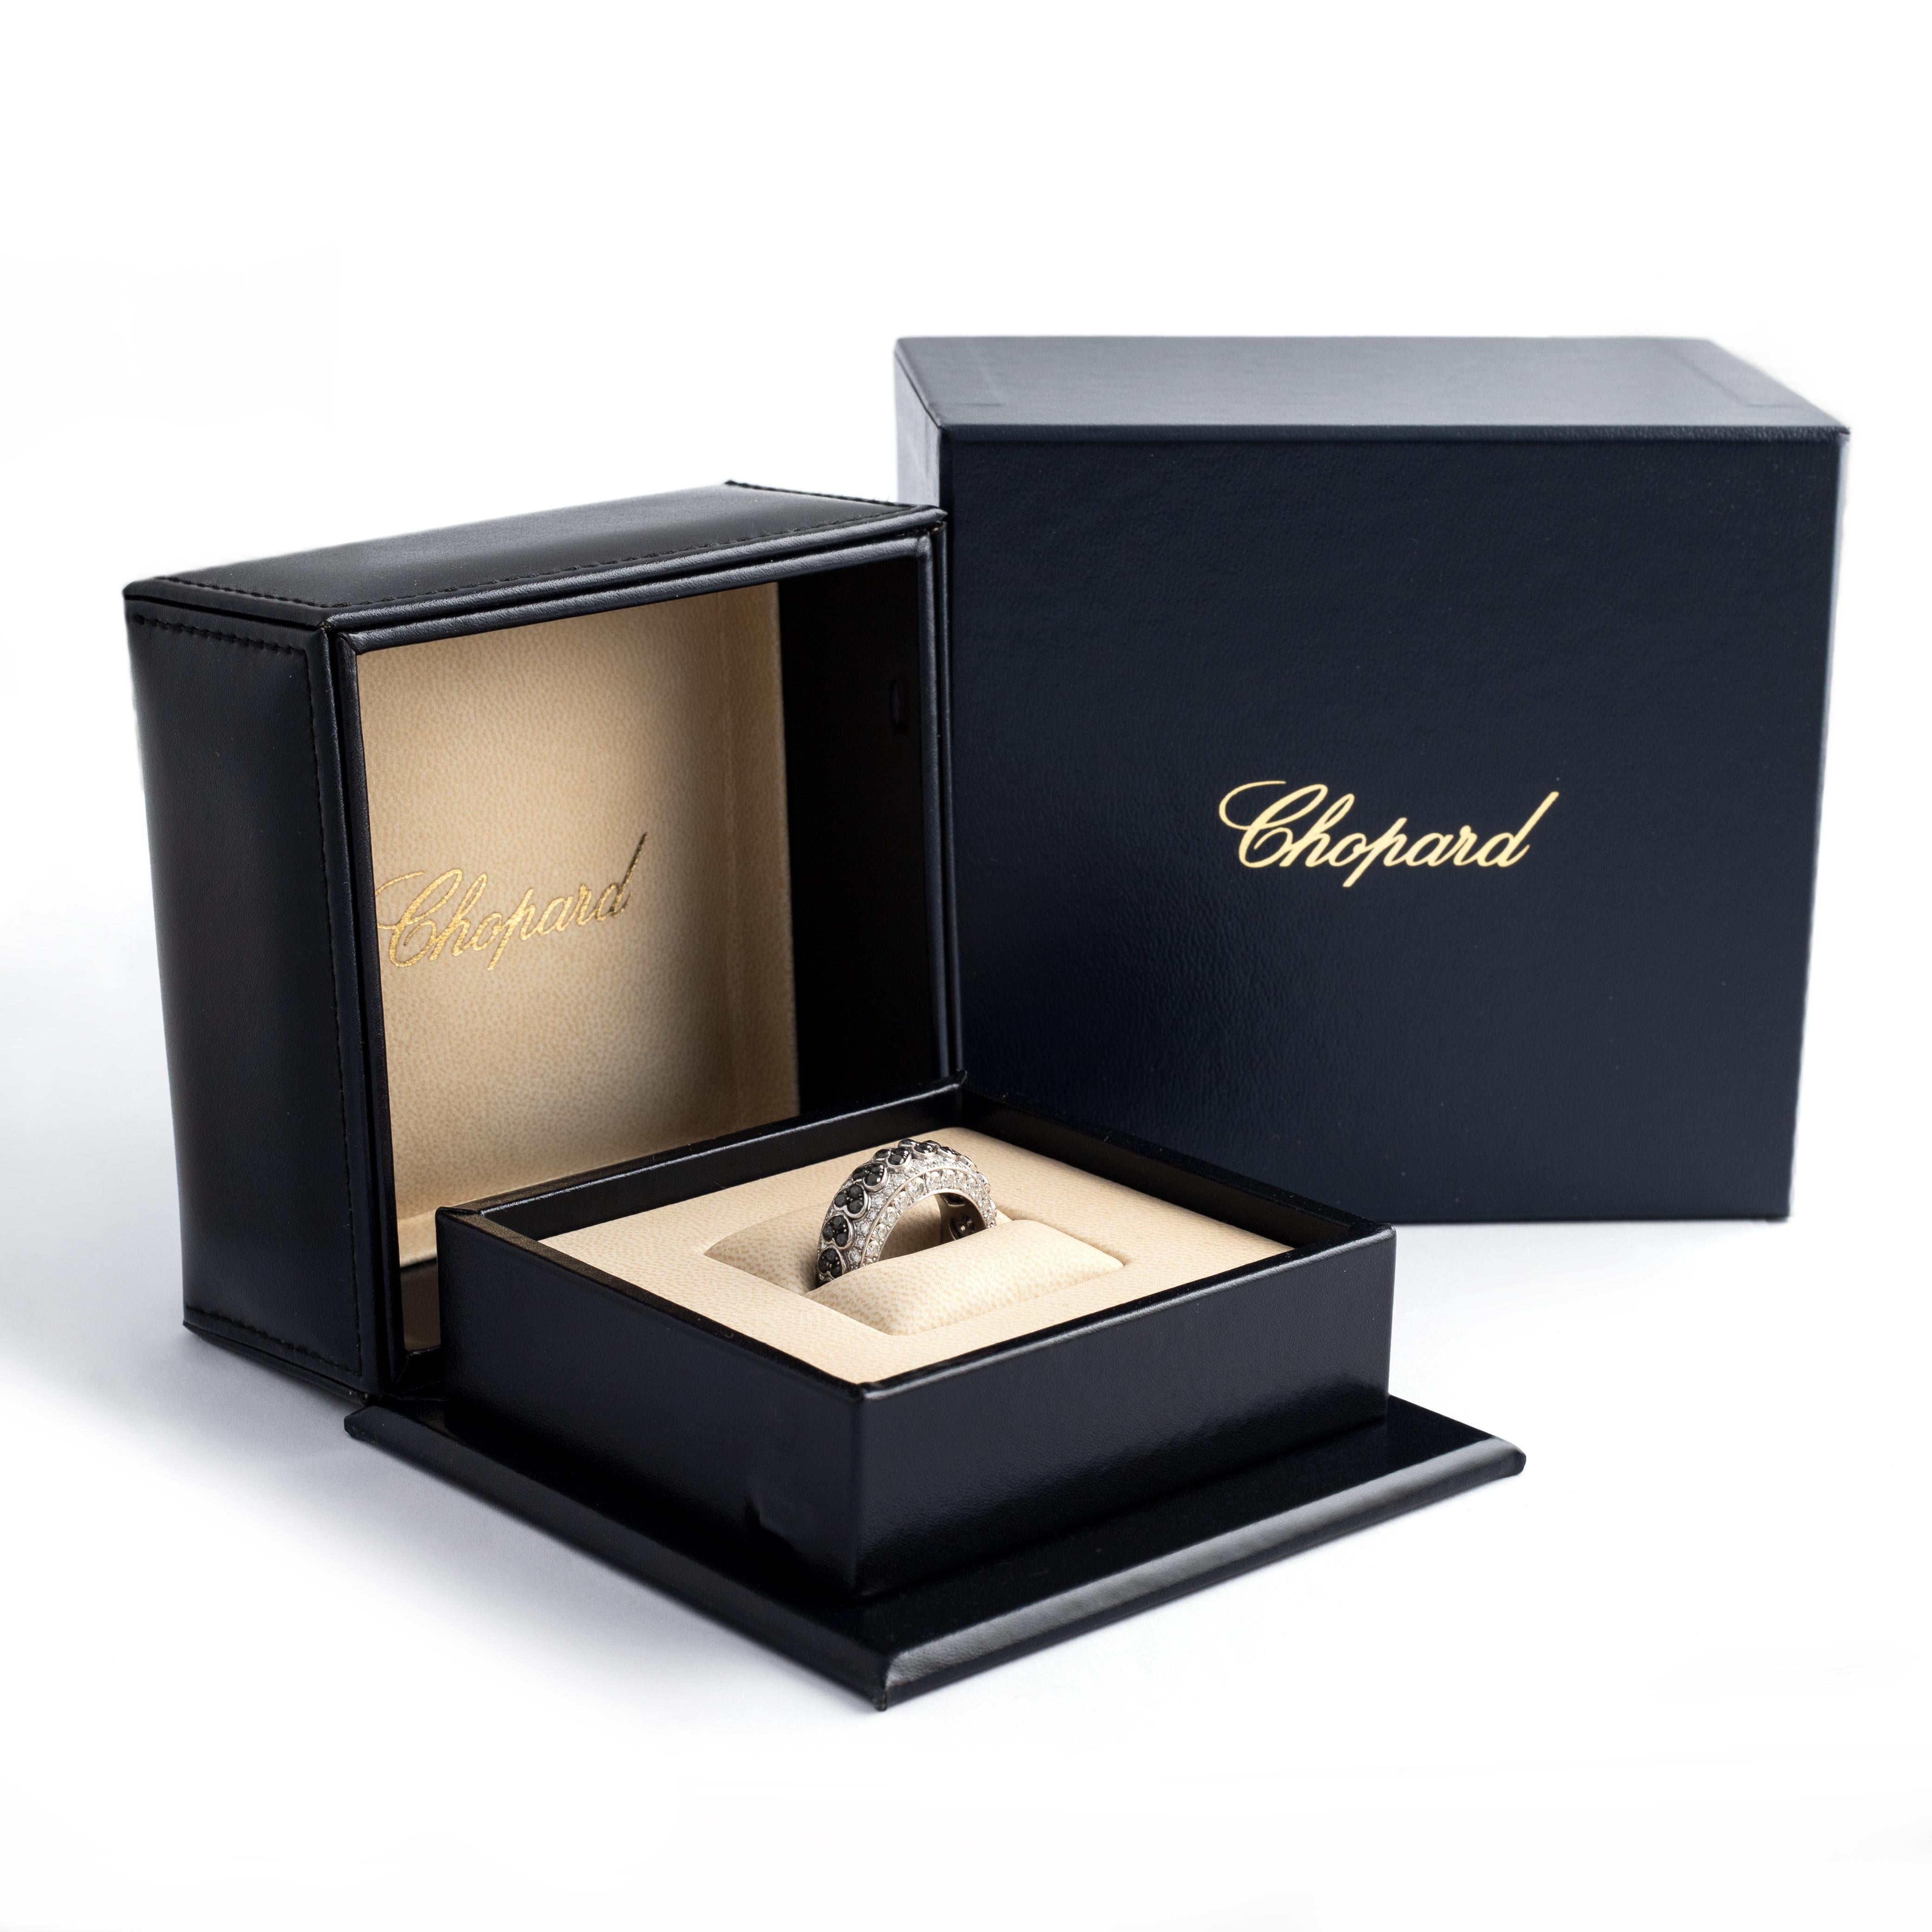 Chopard Diamant Schwarz und Weiß auf Weißgold 18K Ring.
Einzigartiges Stück, Sonderbestellung.
Herzmuster.

Chopard original Box.

Größe: 56
Gewicht: 12.17 Gramm.